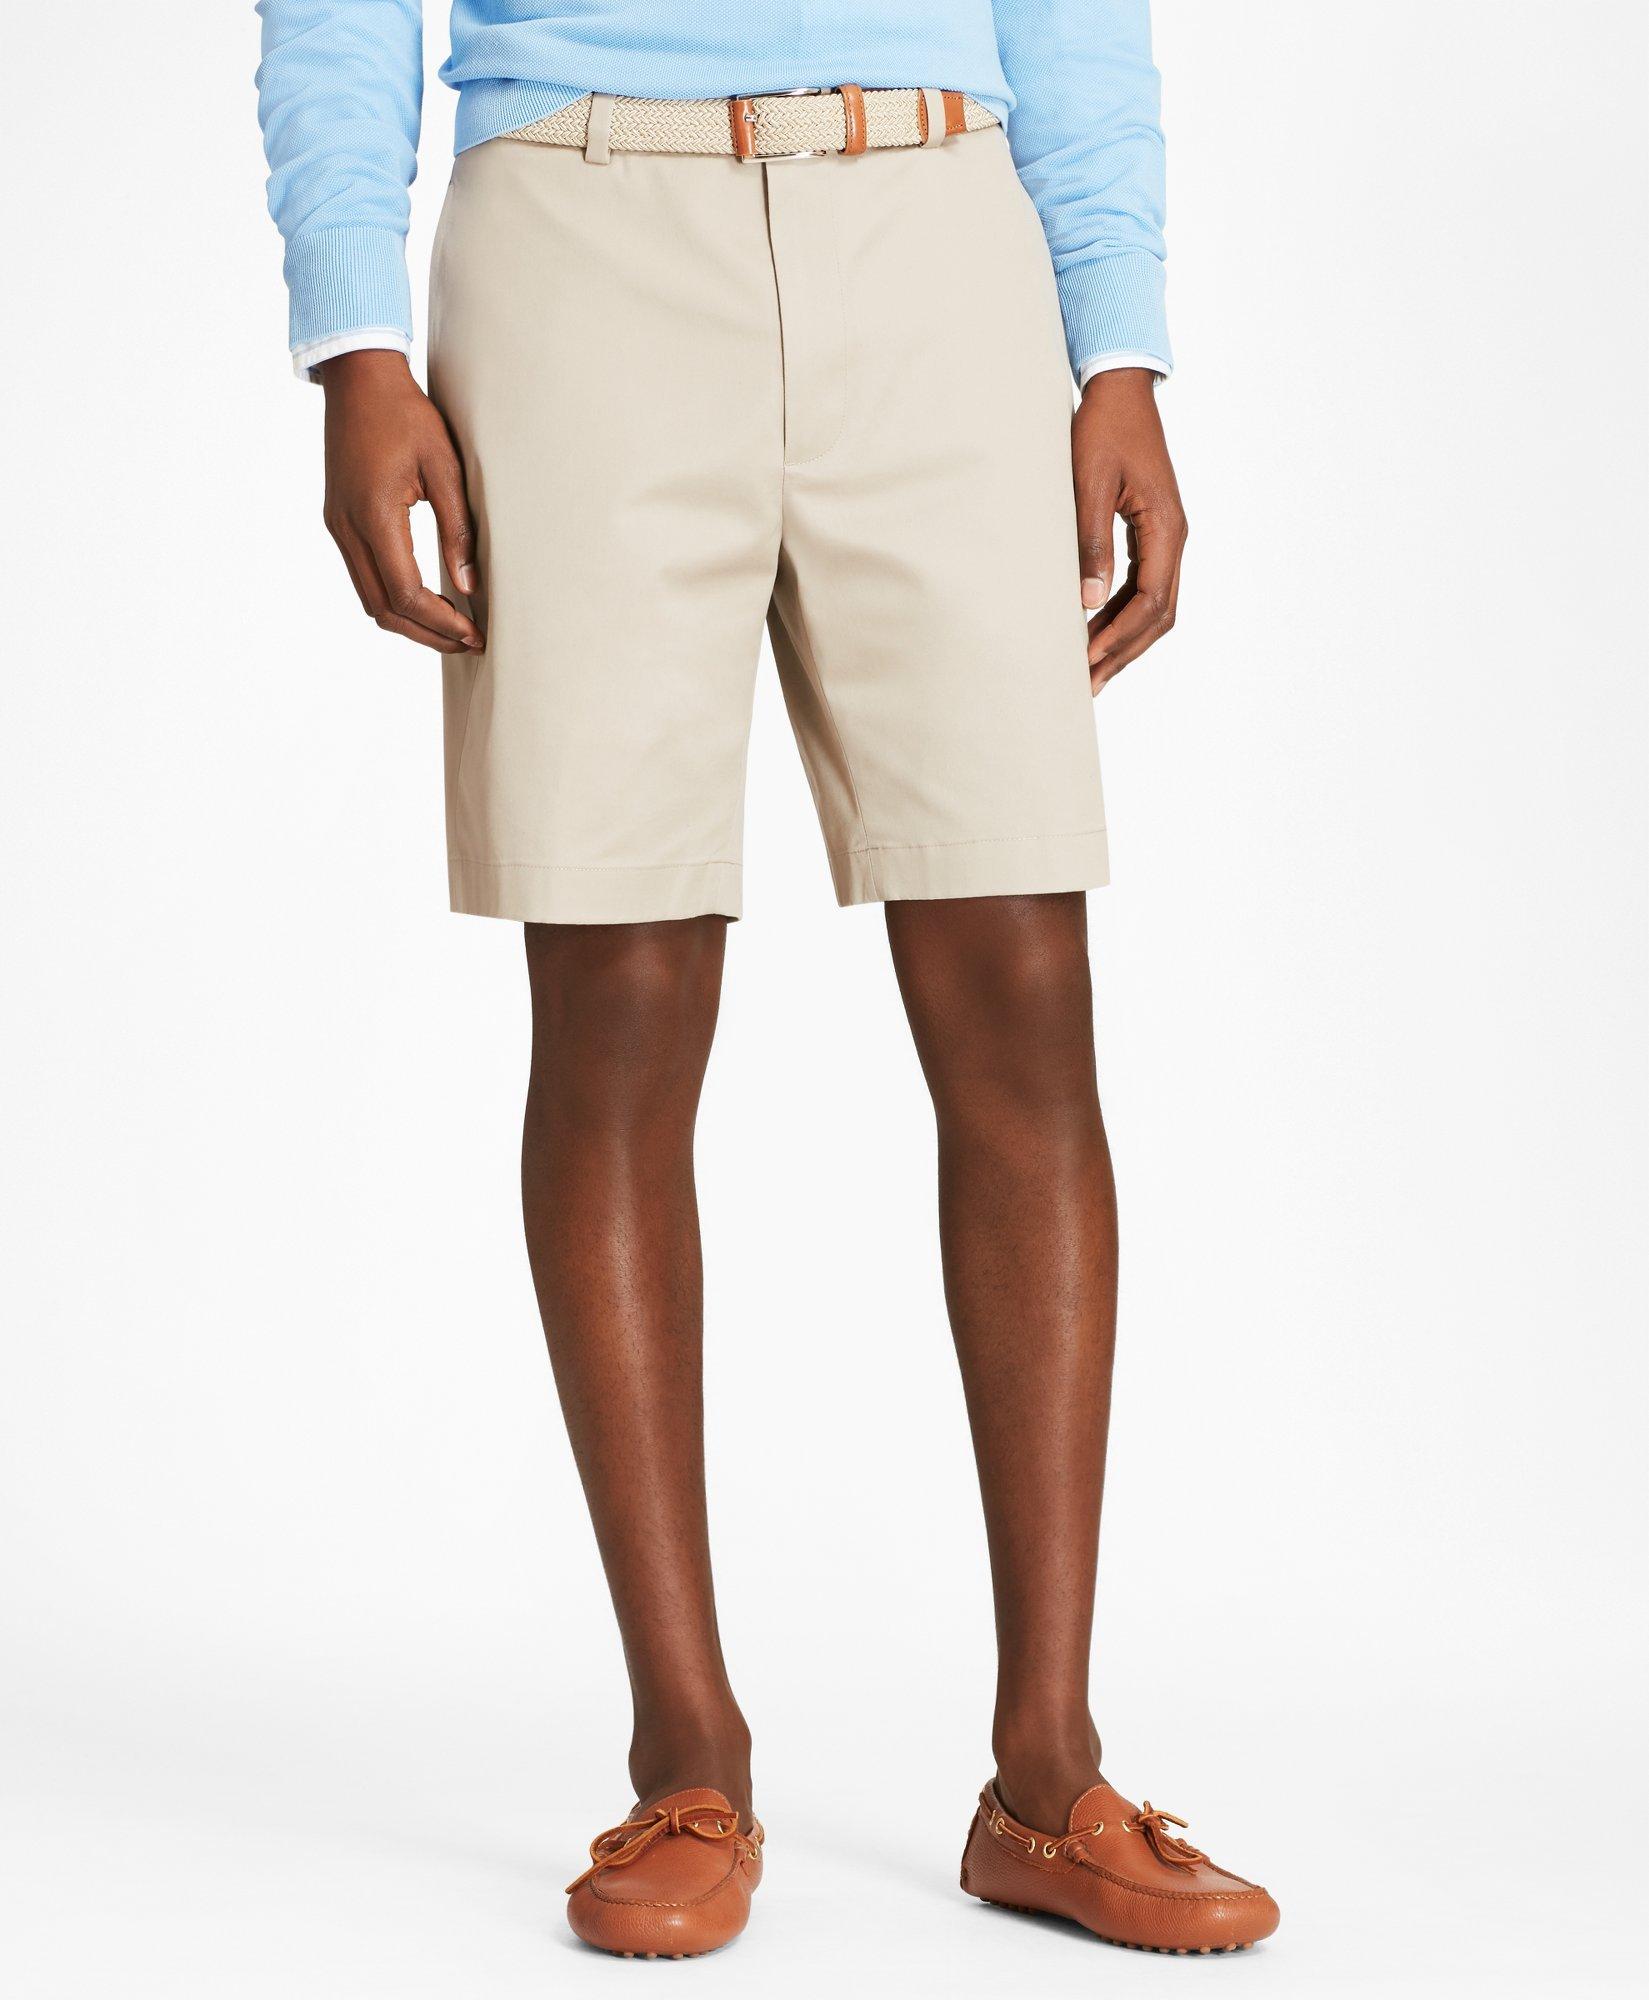 Brooks Brothers 9" Flat Front Stretch Advantage Chino Shorts | Khaki | Size 36